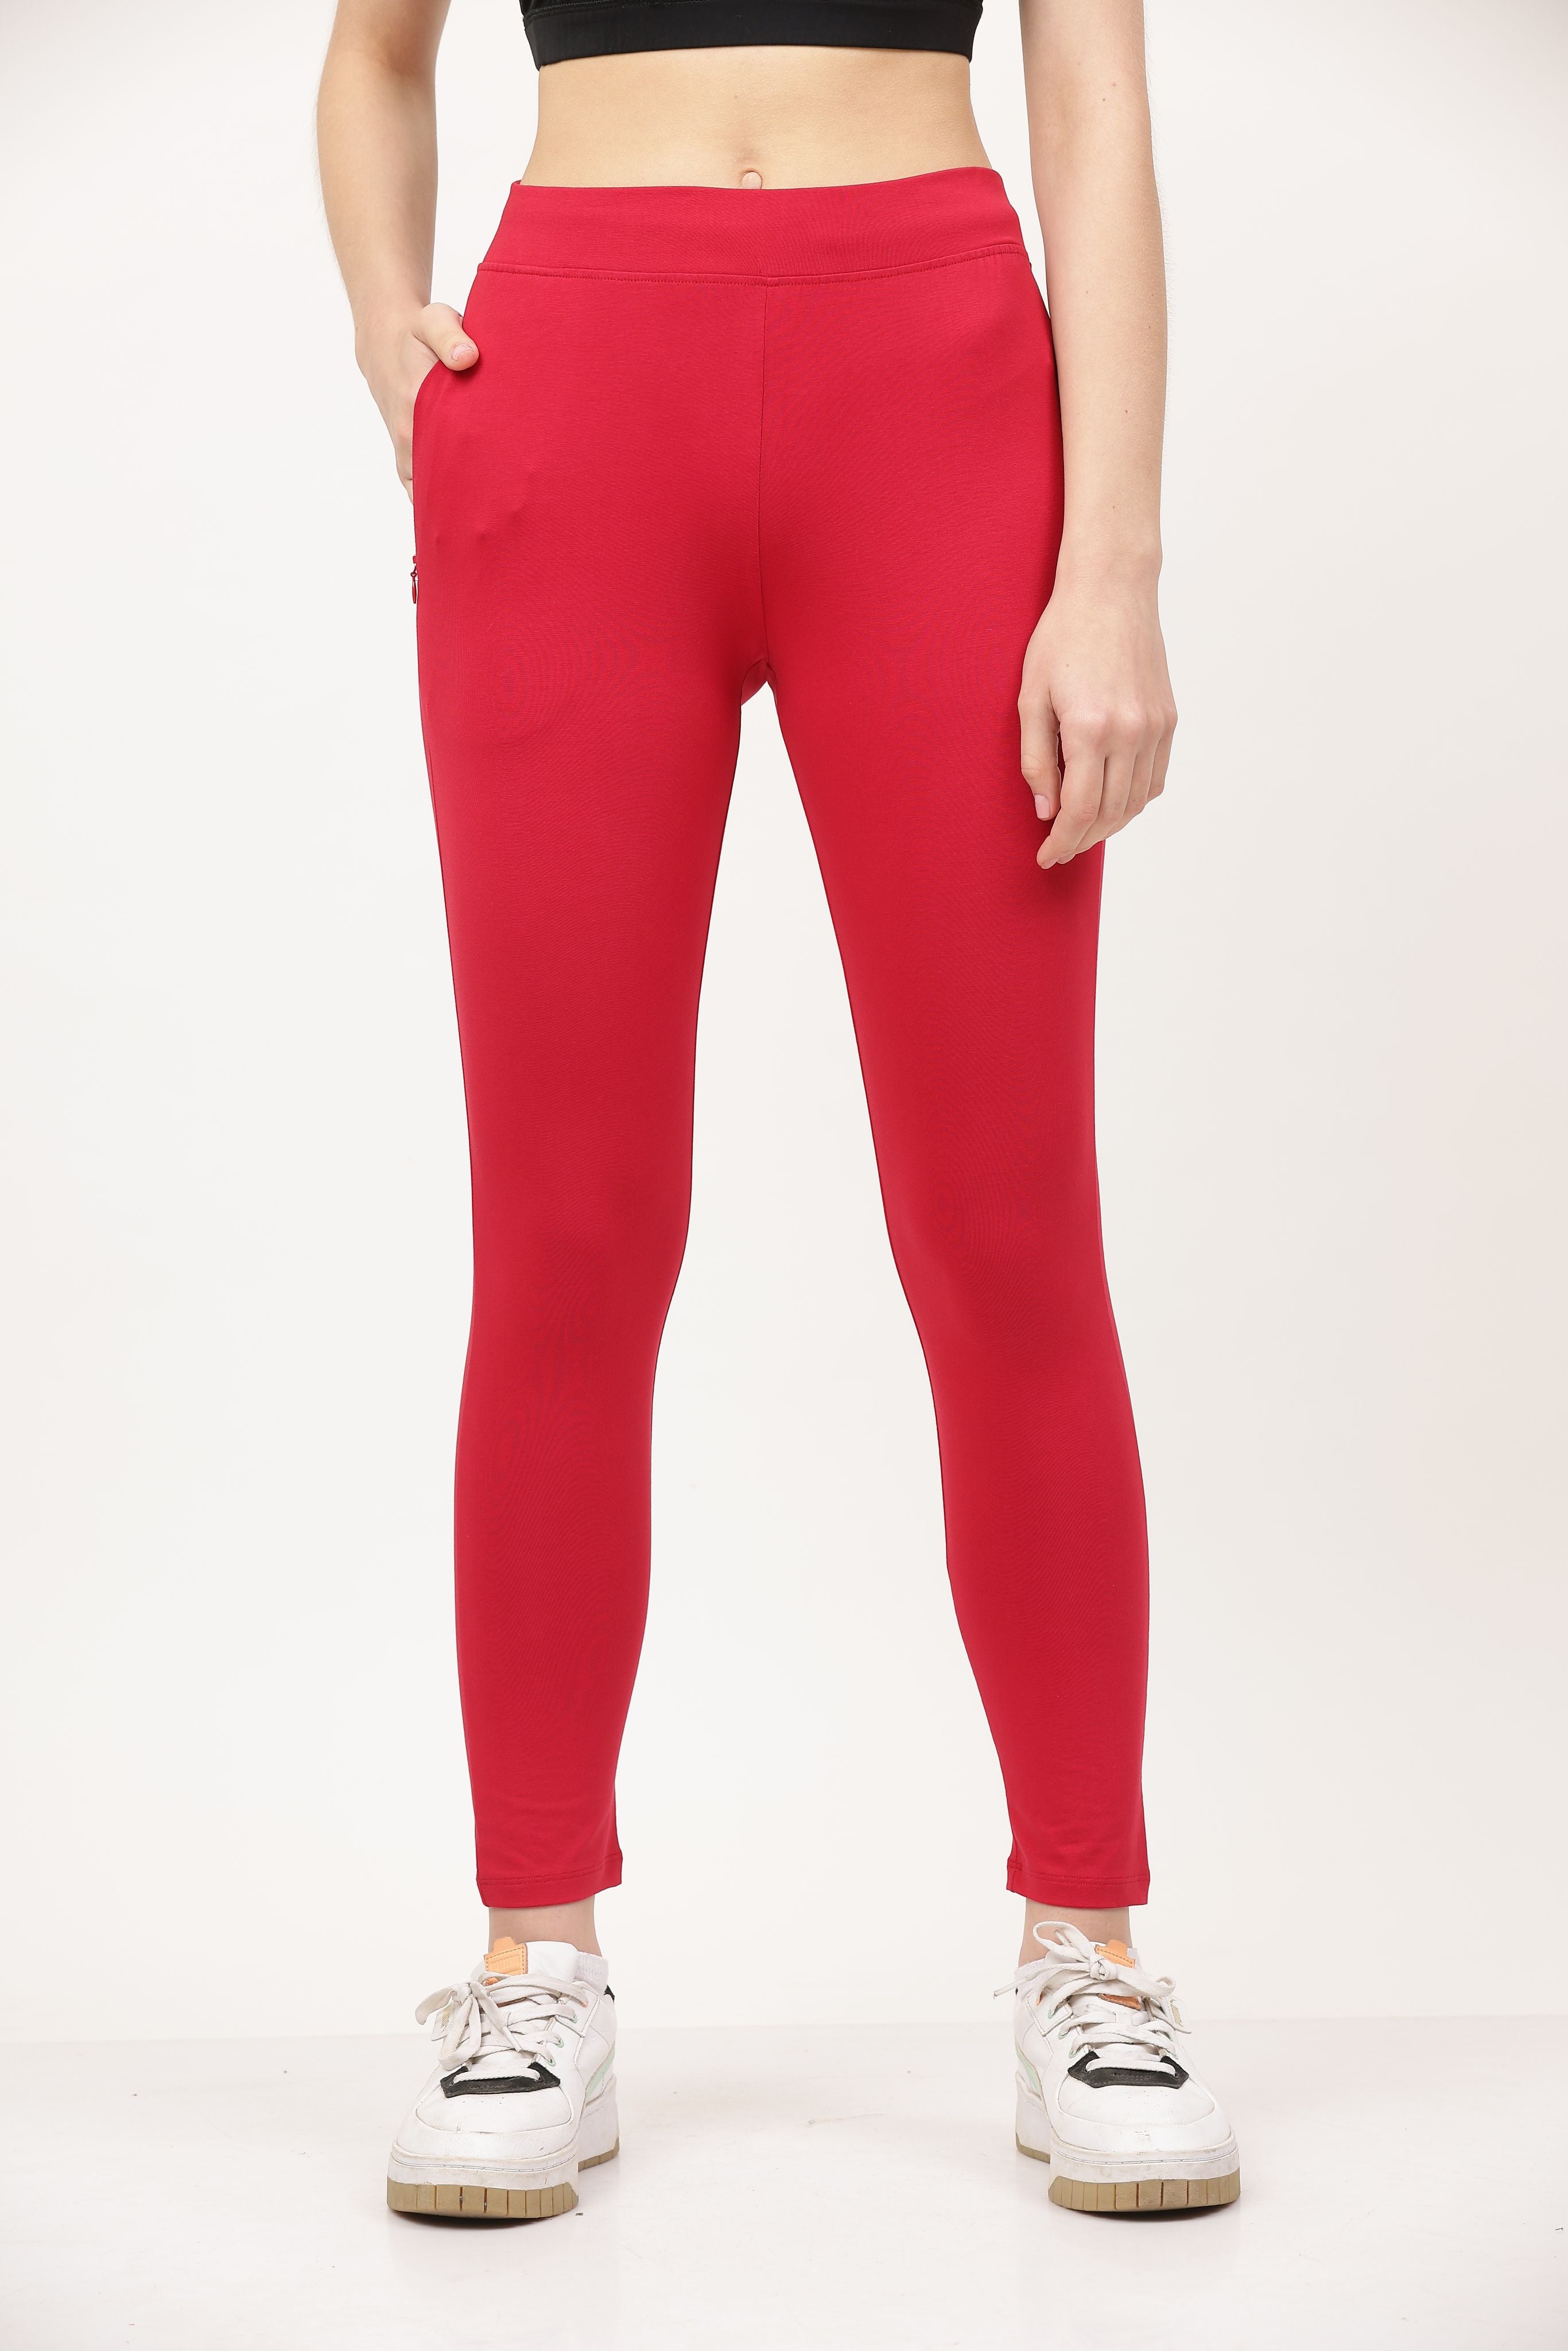 red yoga leggings for women for sale online 